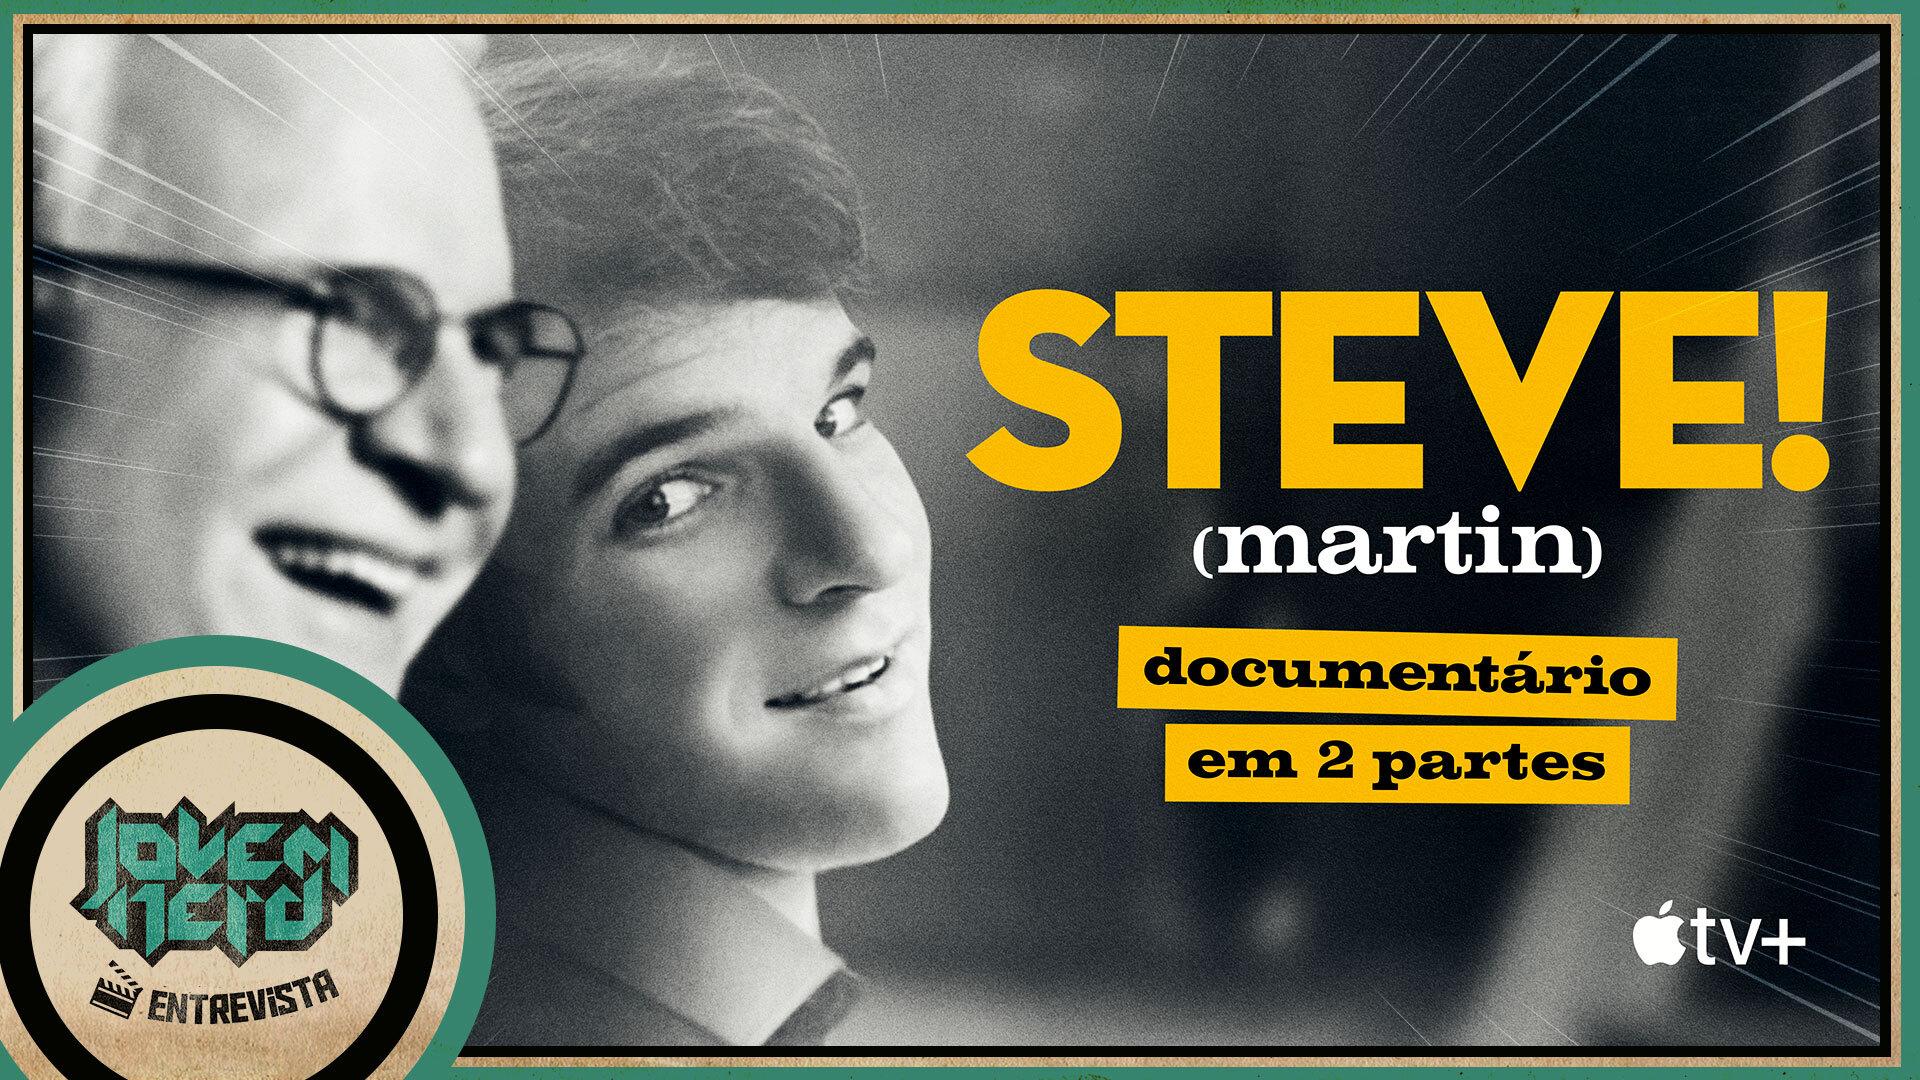 Documentário STEVE! (martin) | Entrevista com o diretor